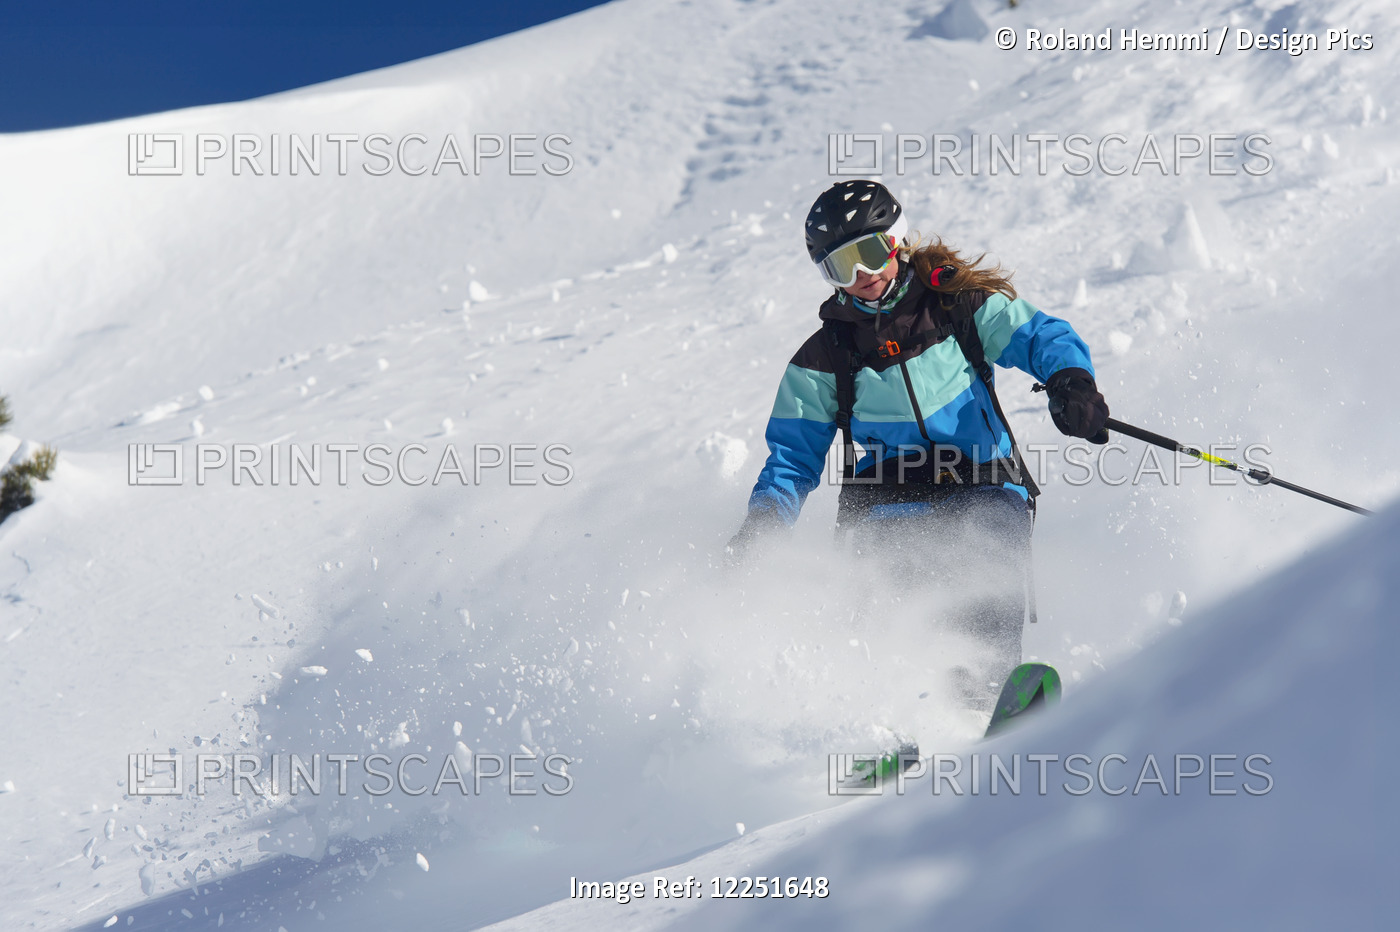 Skiing In Powder Snow; St. Moritz, Graubunden, Switzerland